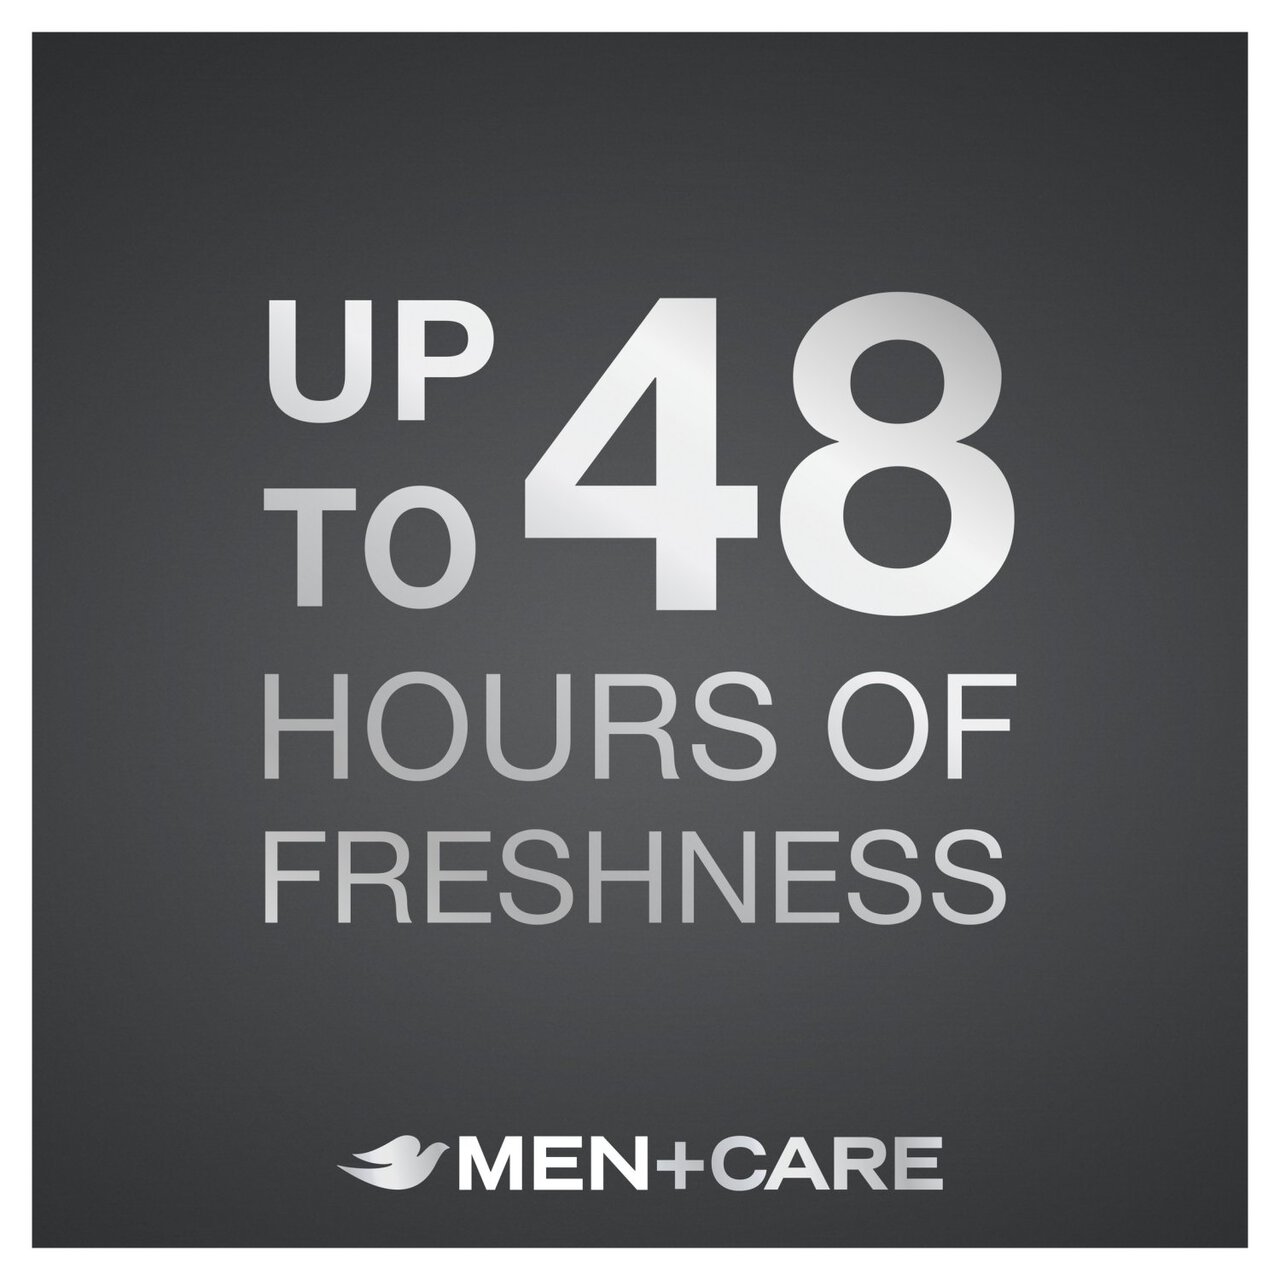 Dove Men+Care Extra Fresh Aerosol Anti-Perspirant Deodorant 250ml